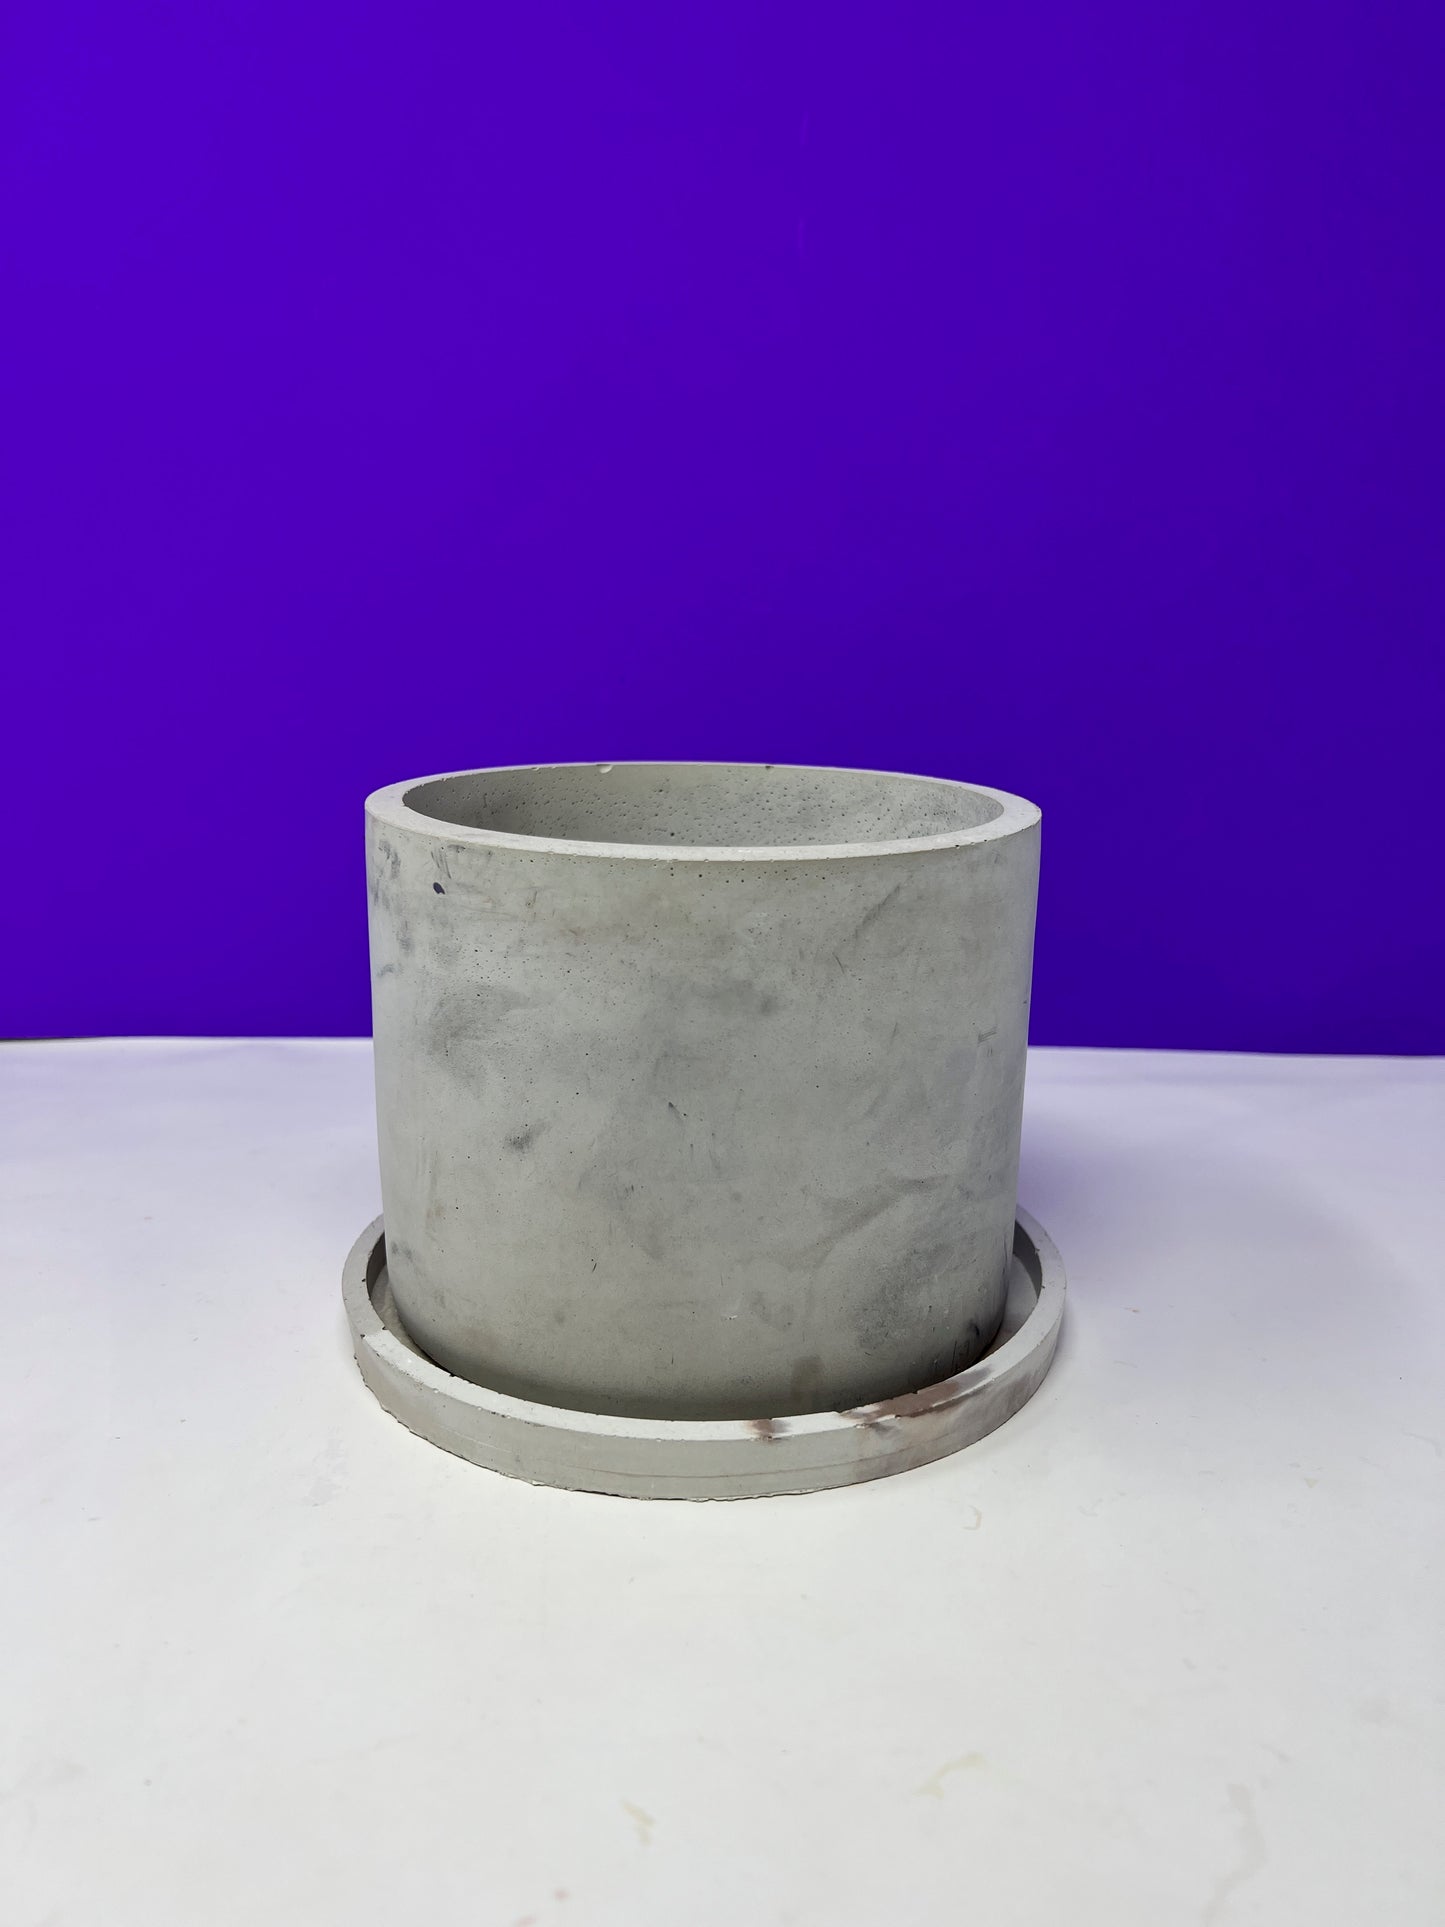 6 inch Concrete Pot